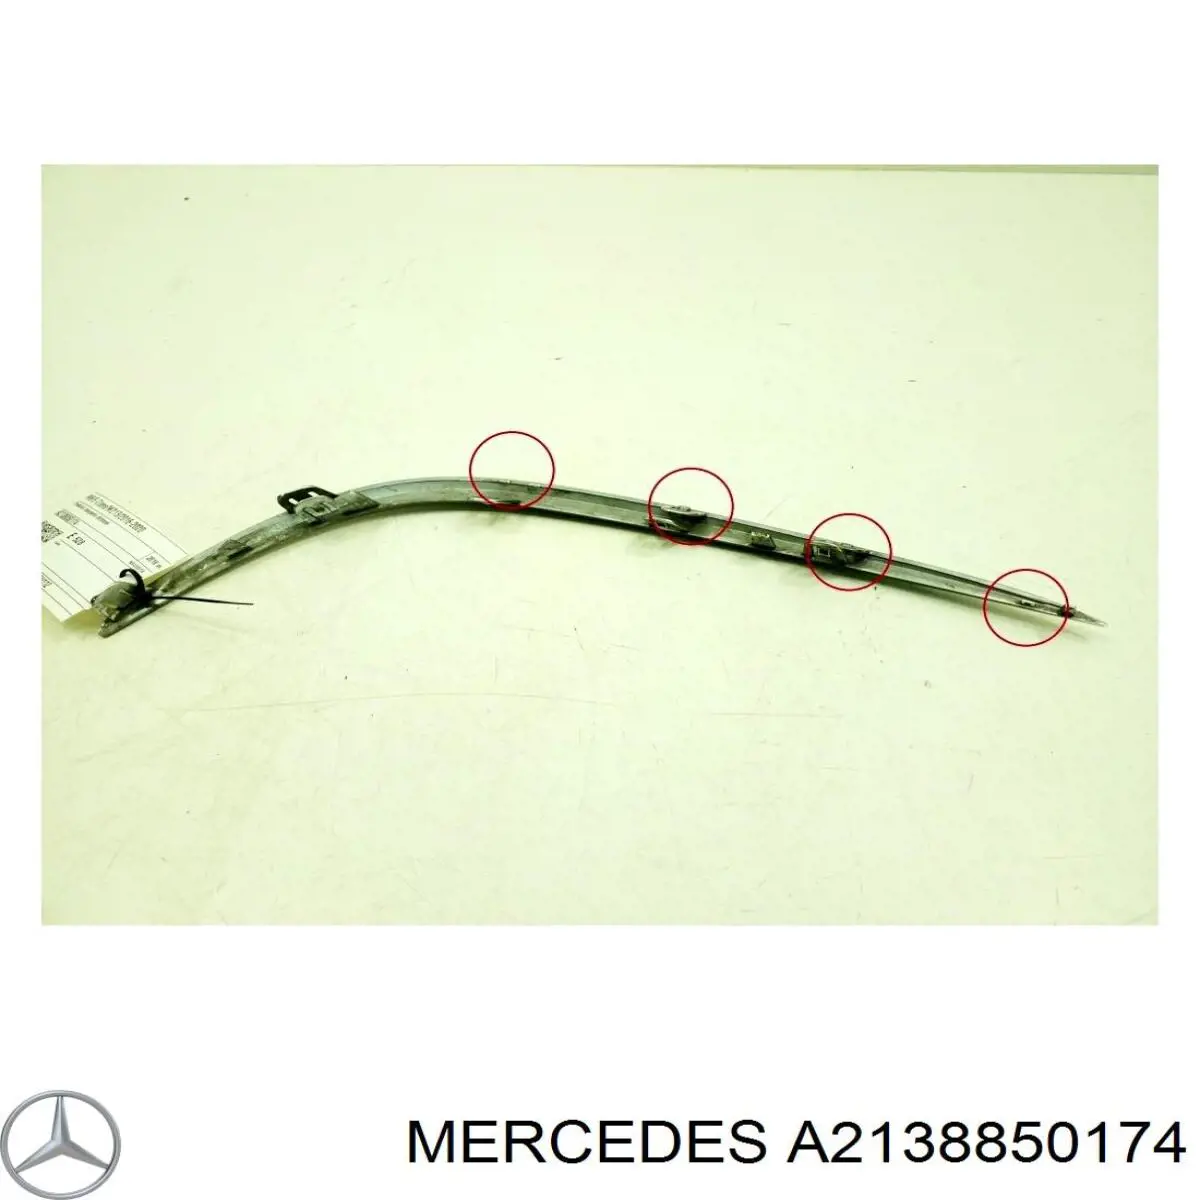 A2138850174 Mercedes moldura de rejilla parachoques delantero izquierda